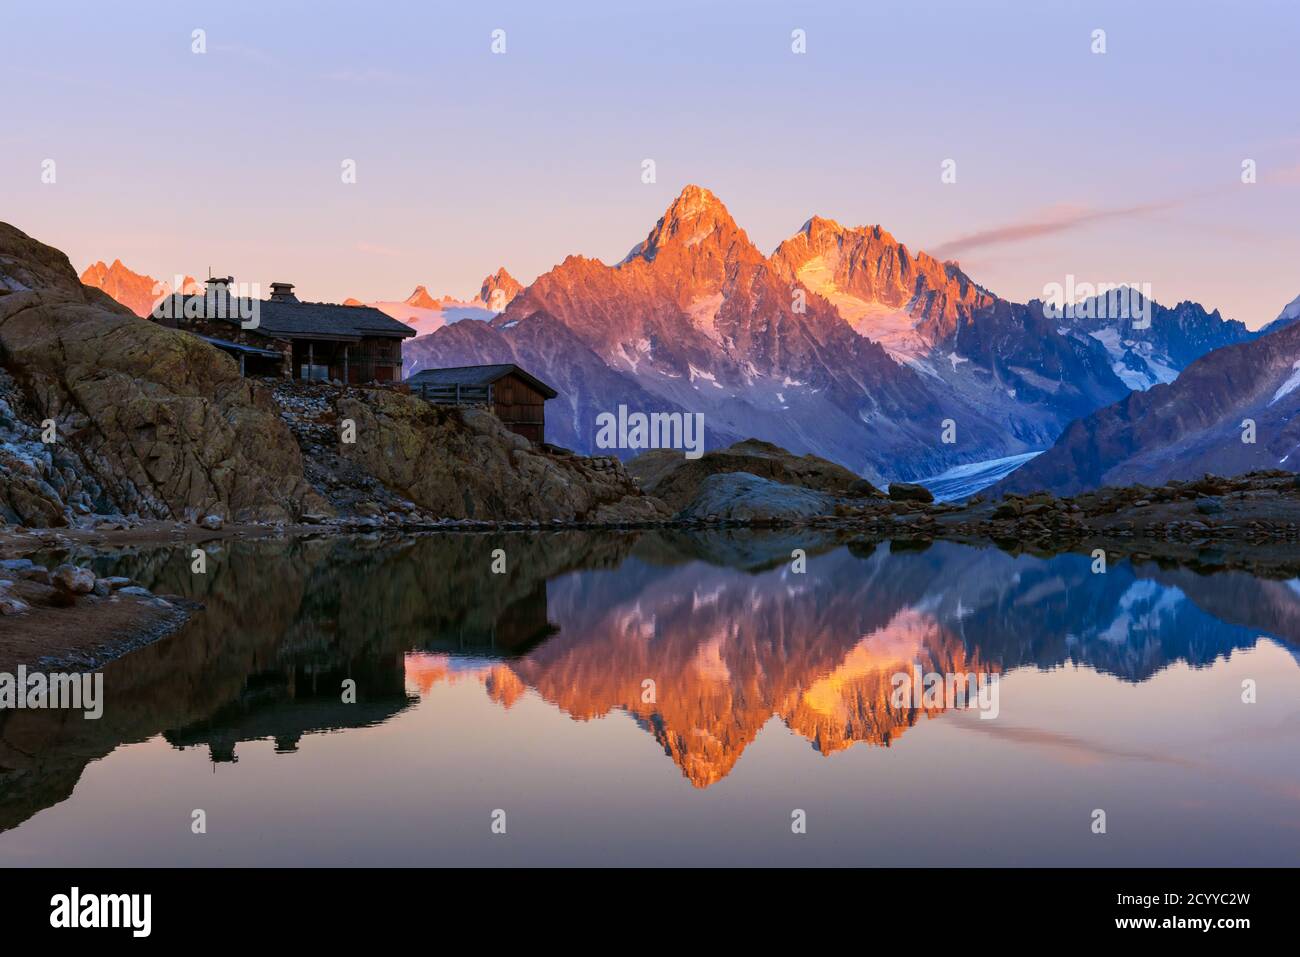 Colorato tramonto sul Lac Blanc lago in Francia Alpi. Monte Bianco Mountain Range sullo sfondo. Vallon de Berard Nature Preserve, Chamonix, Graian Alps. Fotografia di paesaggi Foto Stock